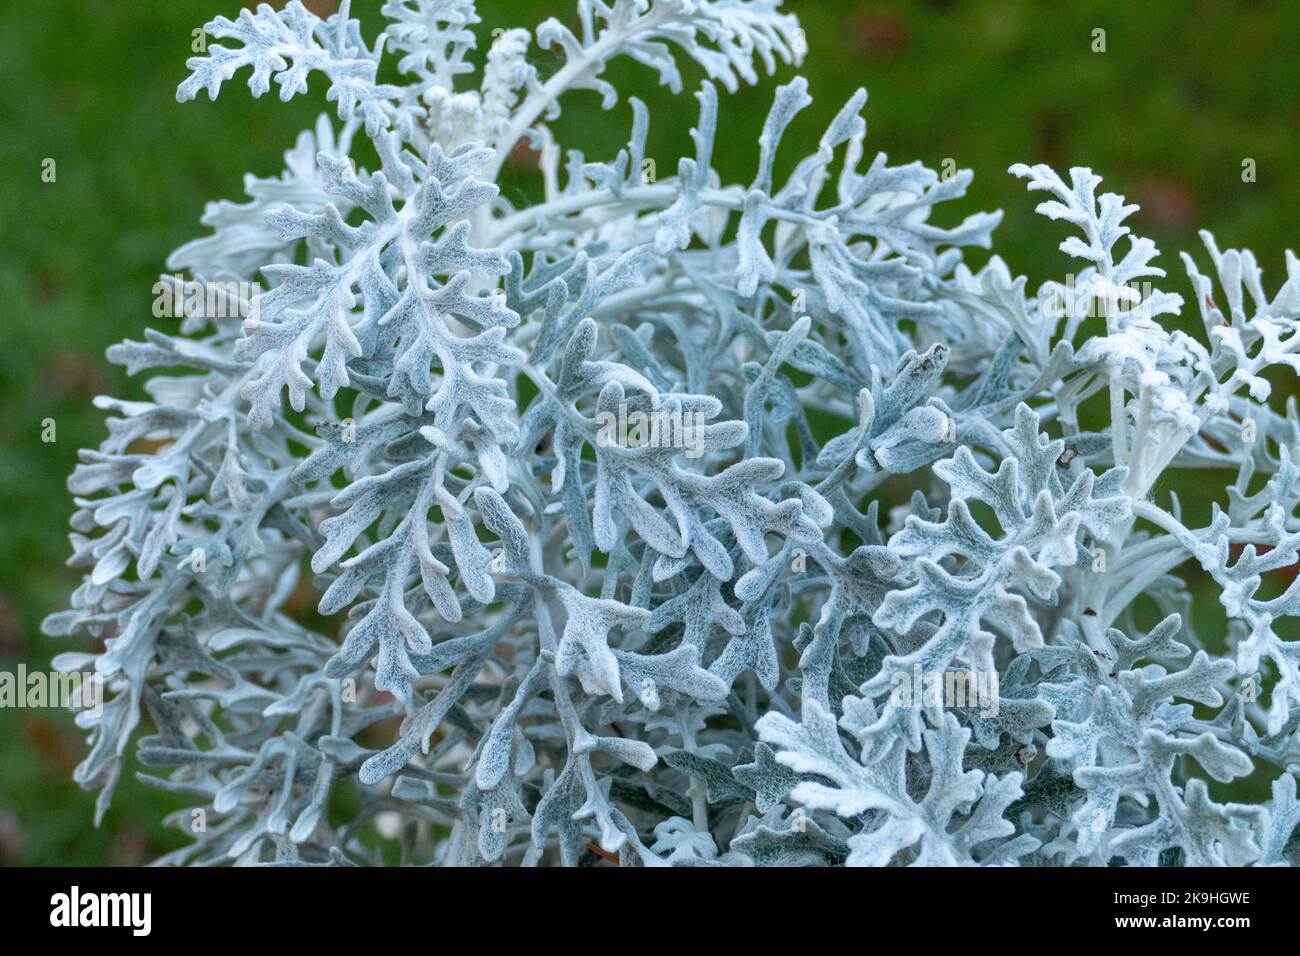 Invierno Silberblatt mit geweihartigen silbernen Blättern Foto de stock